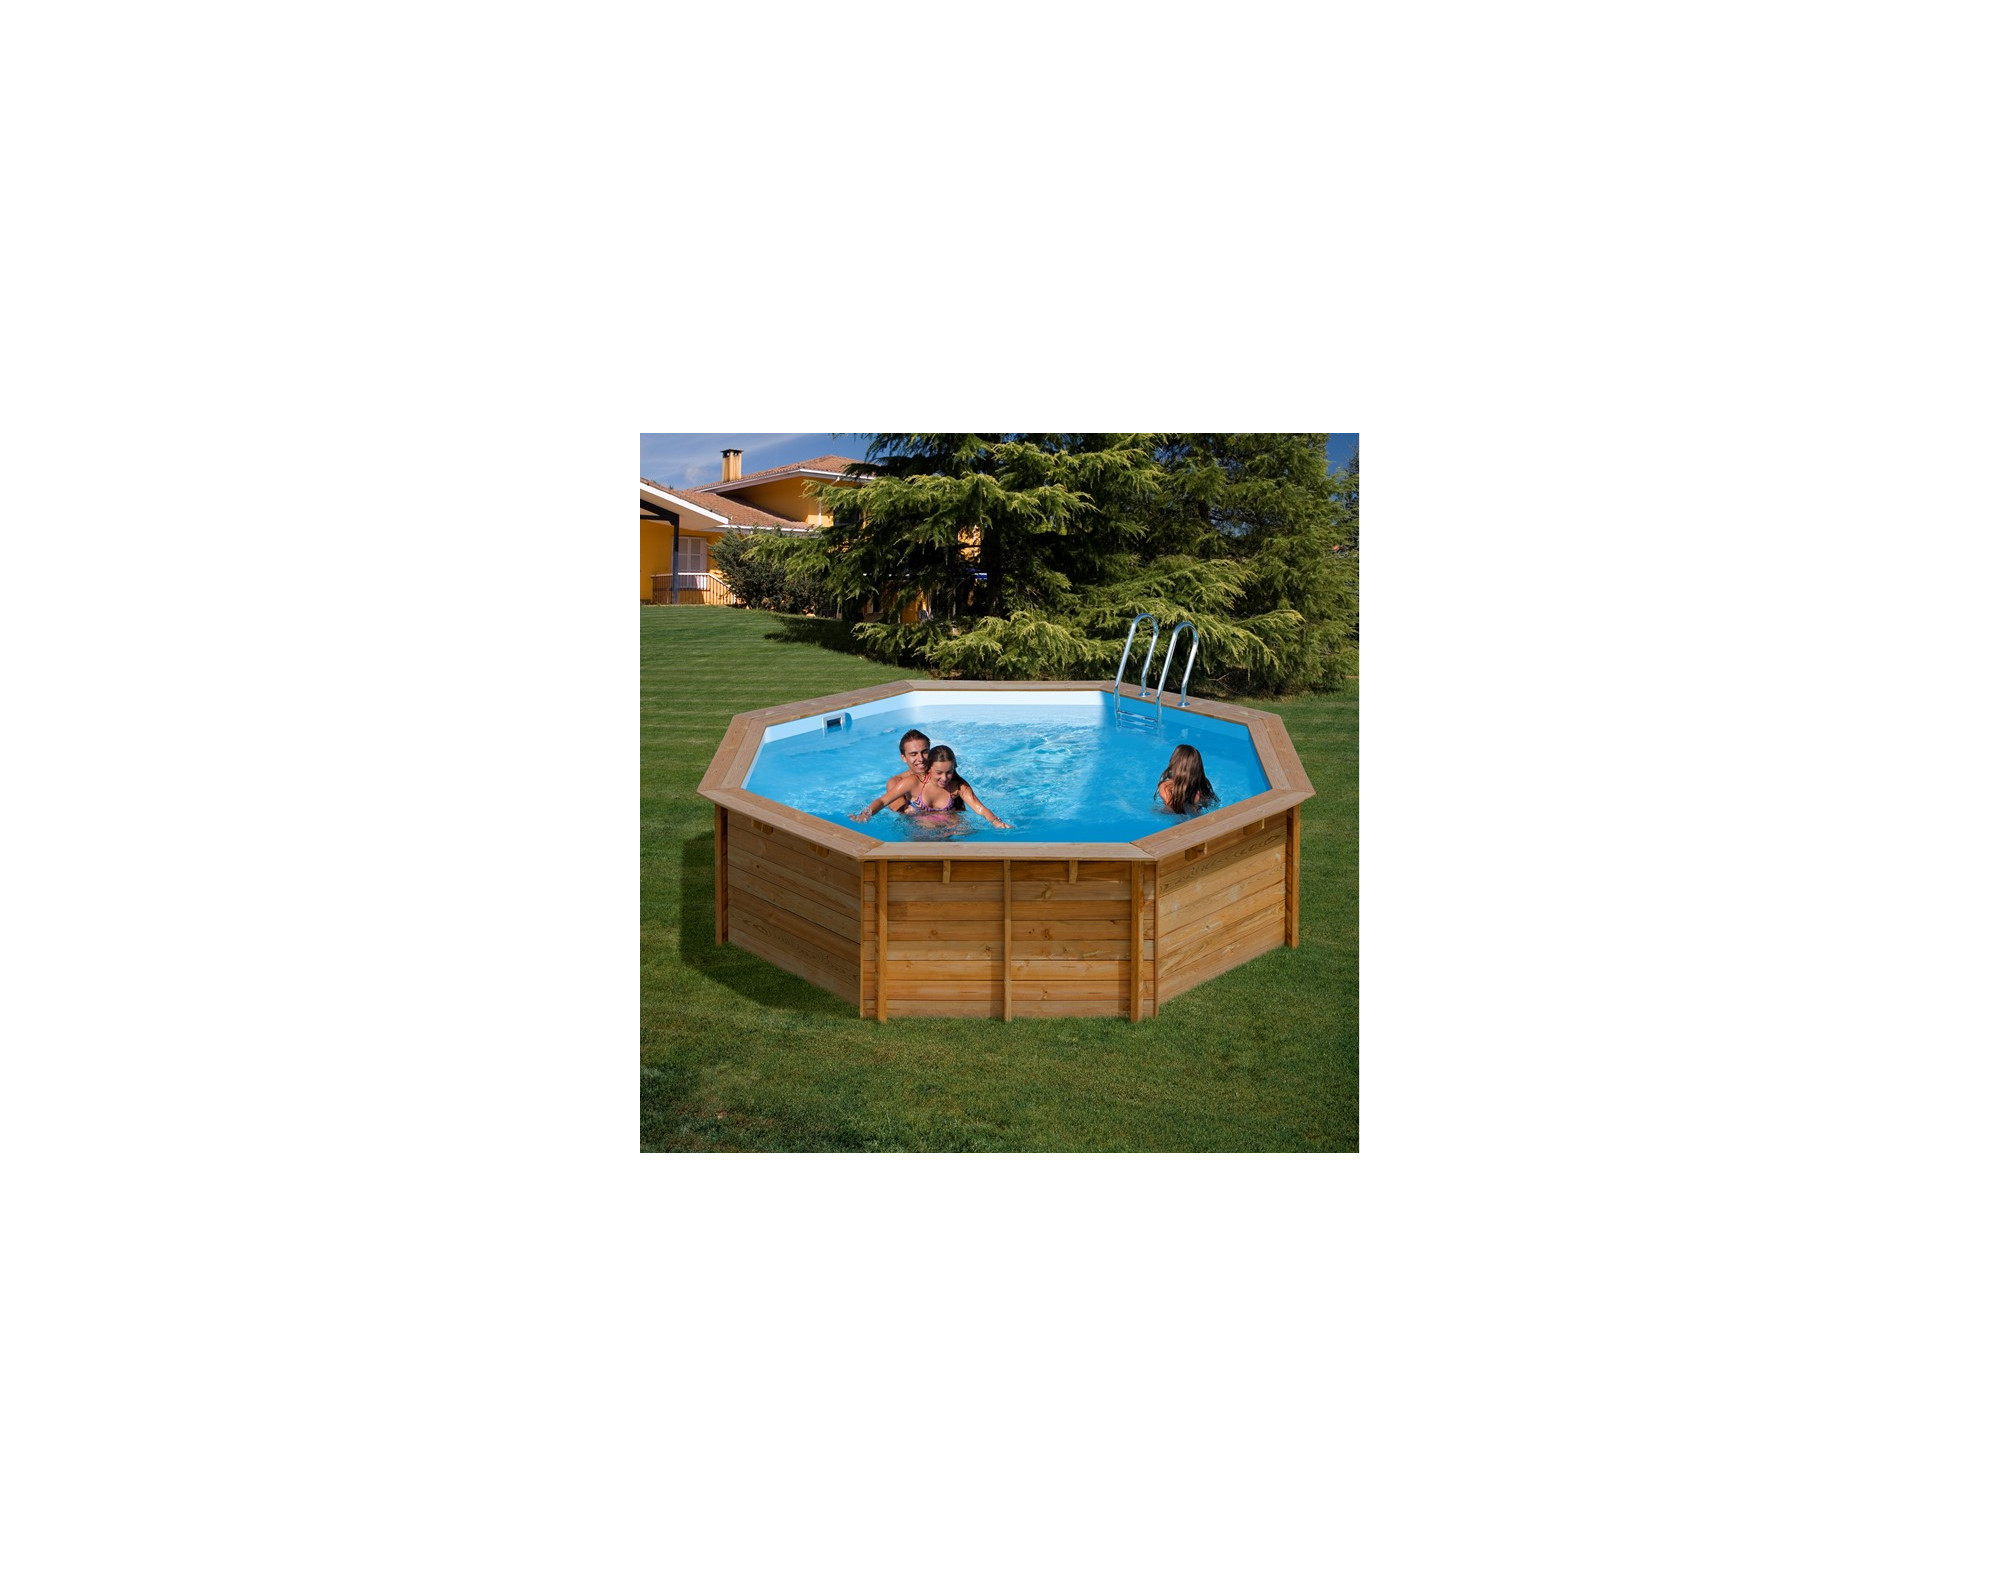 GRE Violette Ø511cm x H:124cm achthoekig houten zwembad met liner blauw 75/100 hung